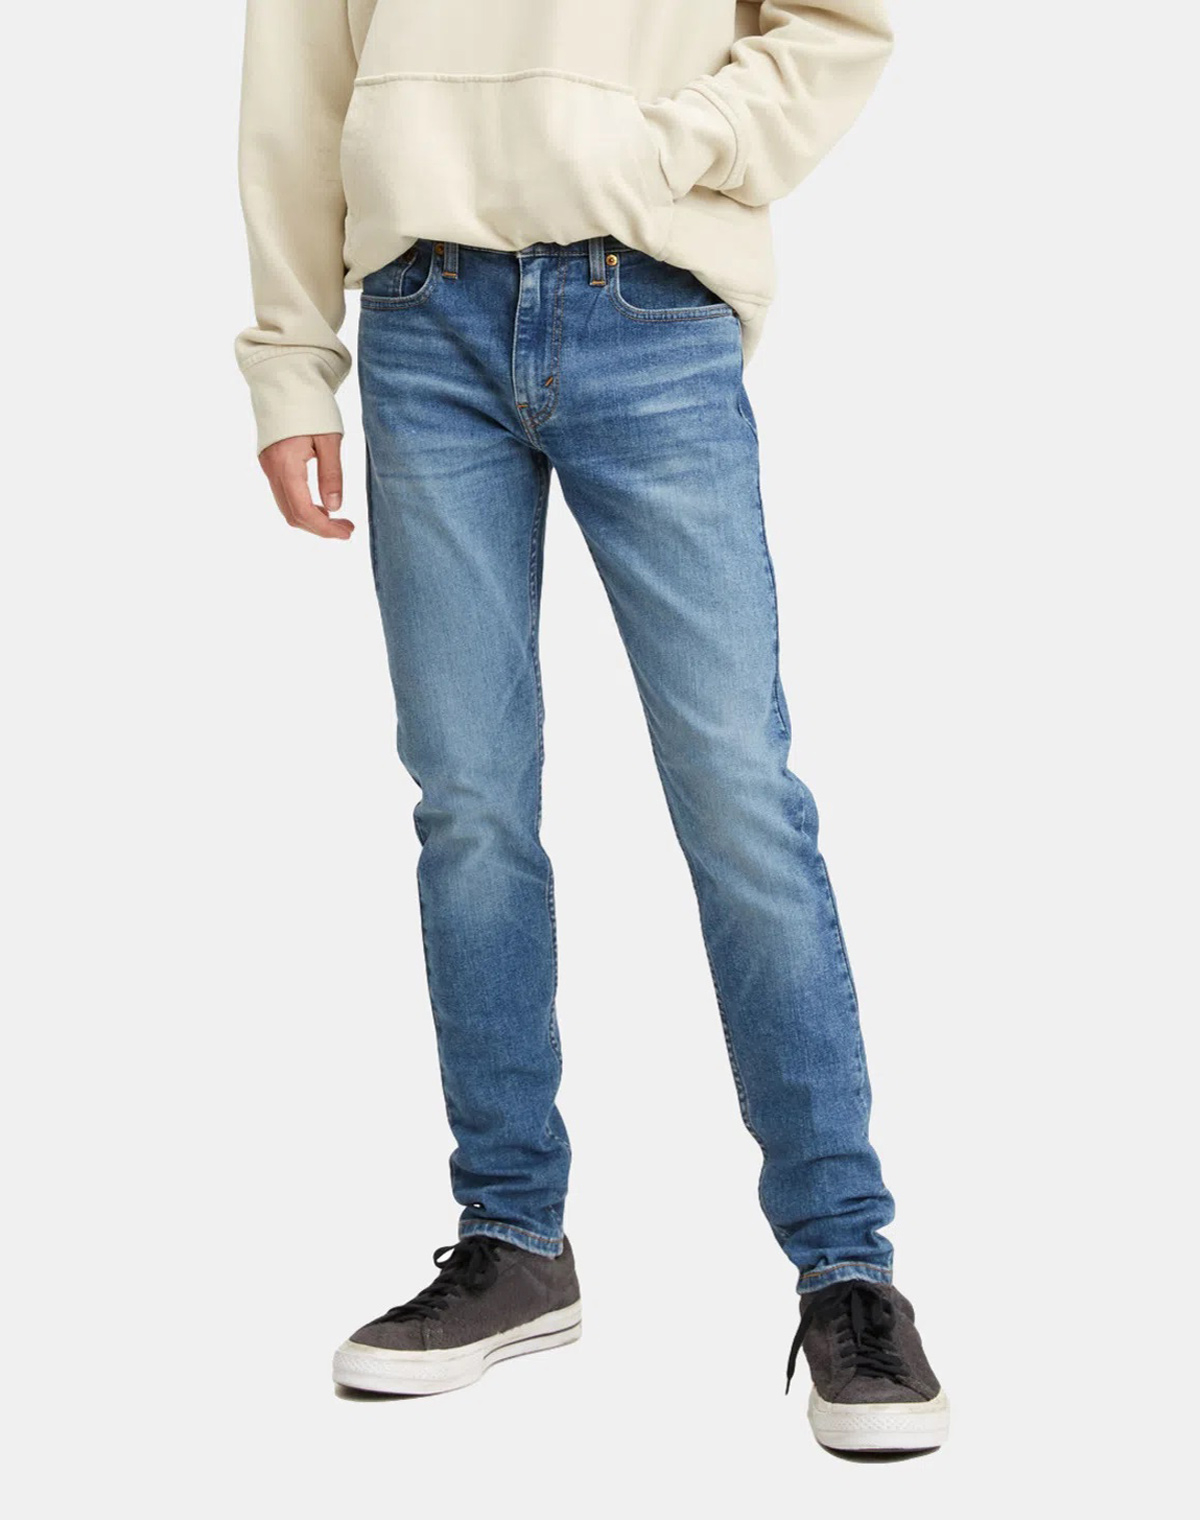 Levi's® Skinny taper™ pantalones vaqueros de hombre 84558-0014 lavados a la piedra